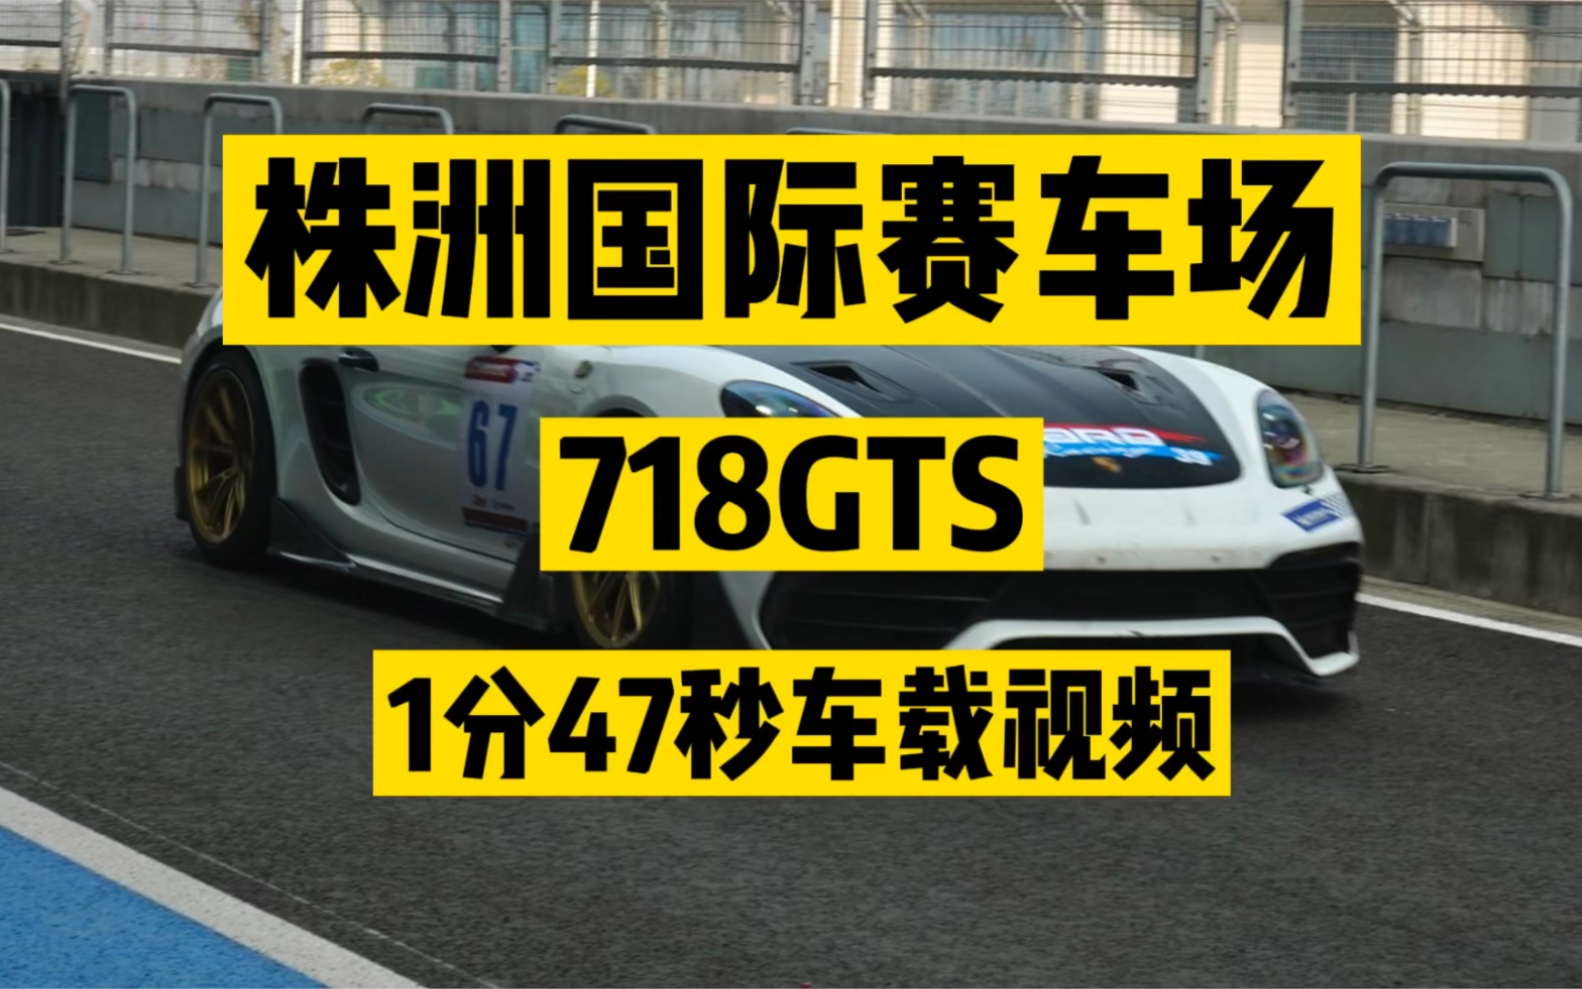 株洲国际赛车场-保时捷718GTS-1分47.3秒车载视频。